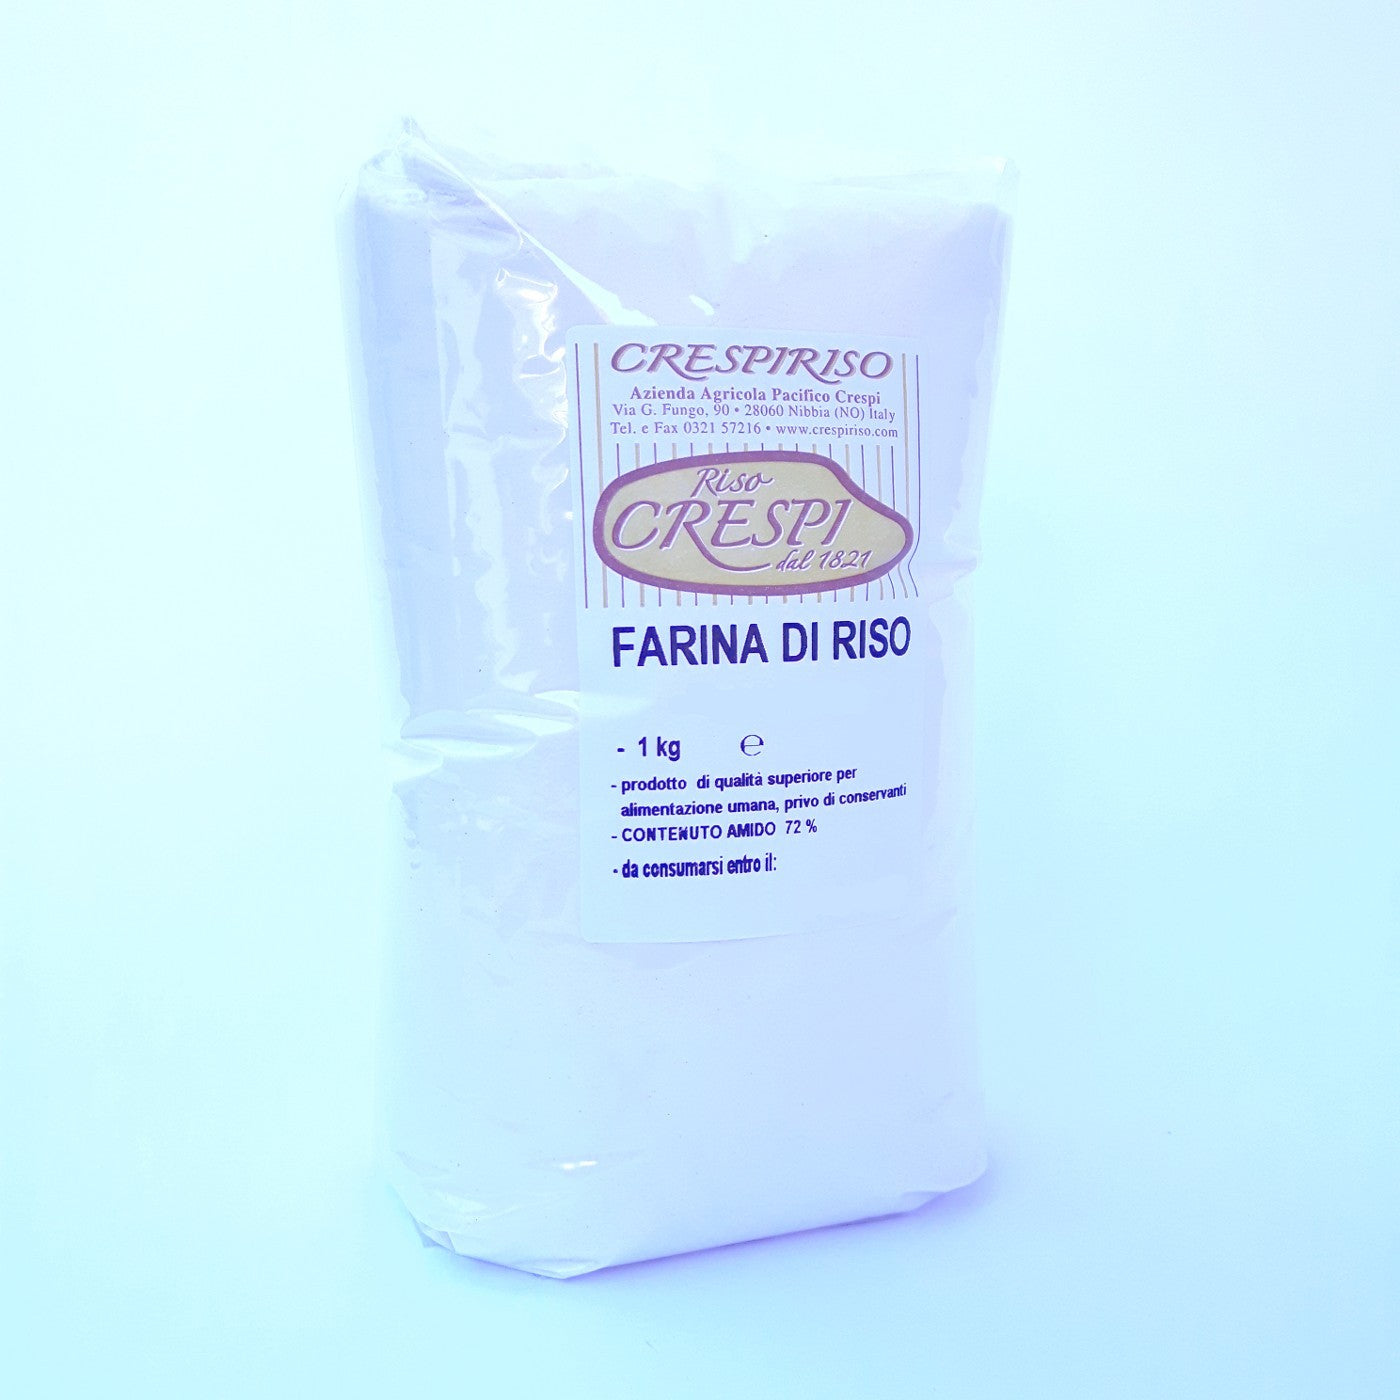 Crespiriso rice flour 1kg